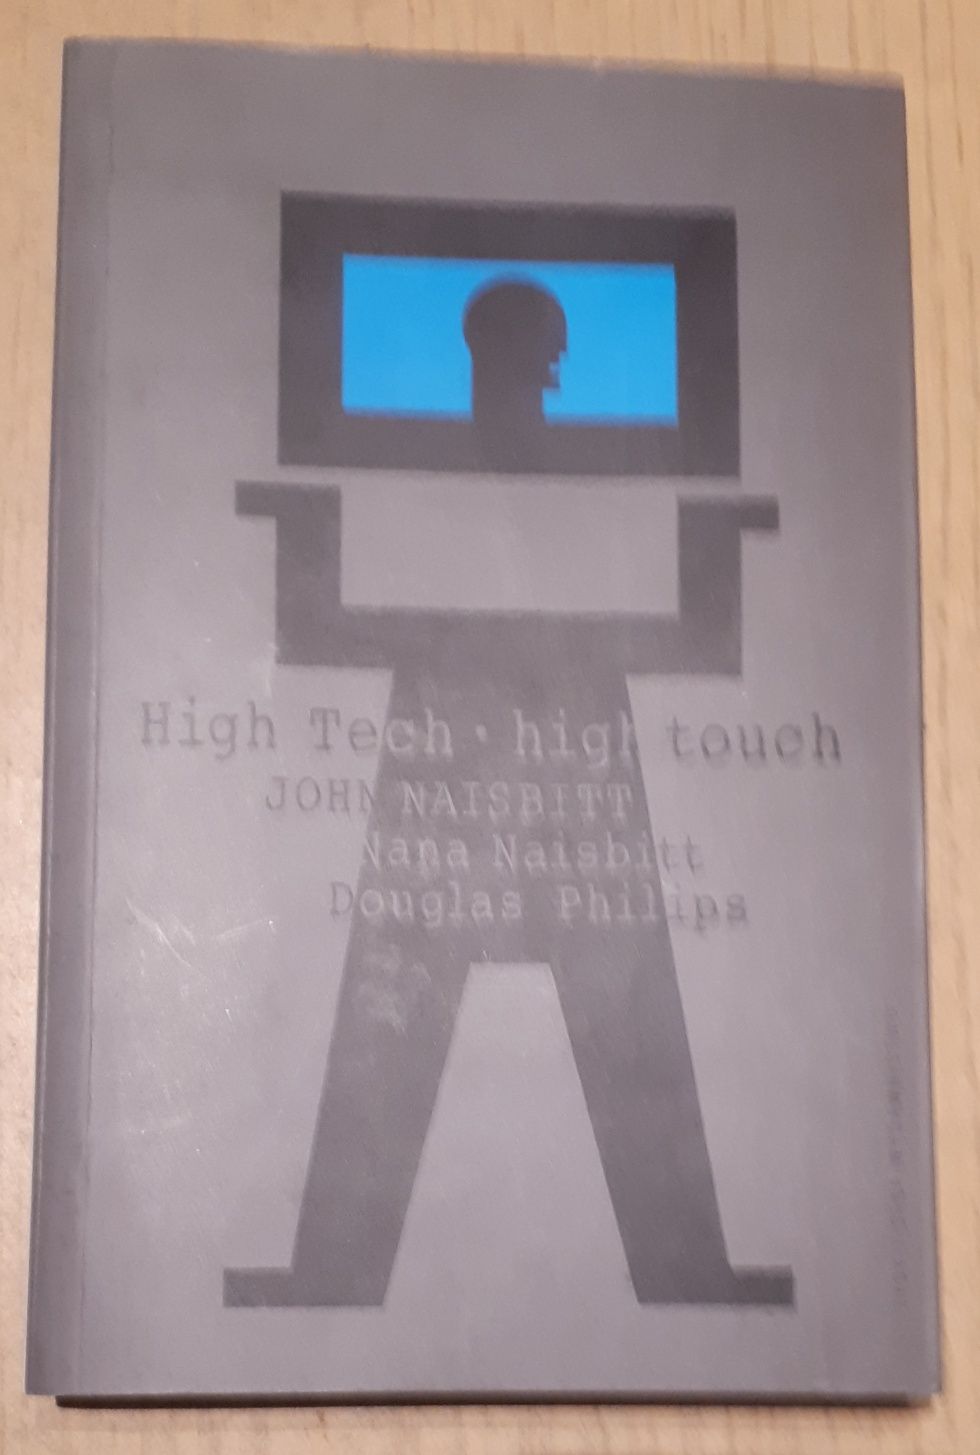 High Tech High Touch John i Nana Naisbitt Douglas Philips 2003